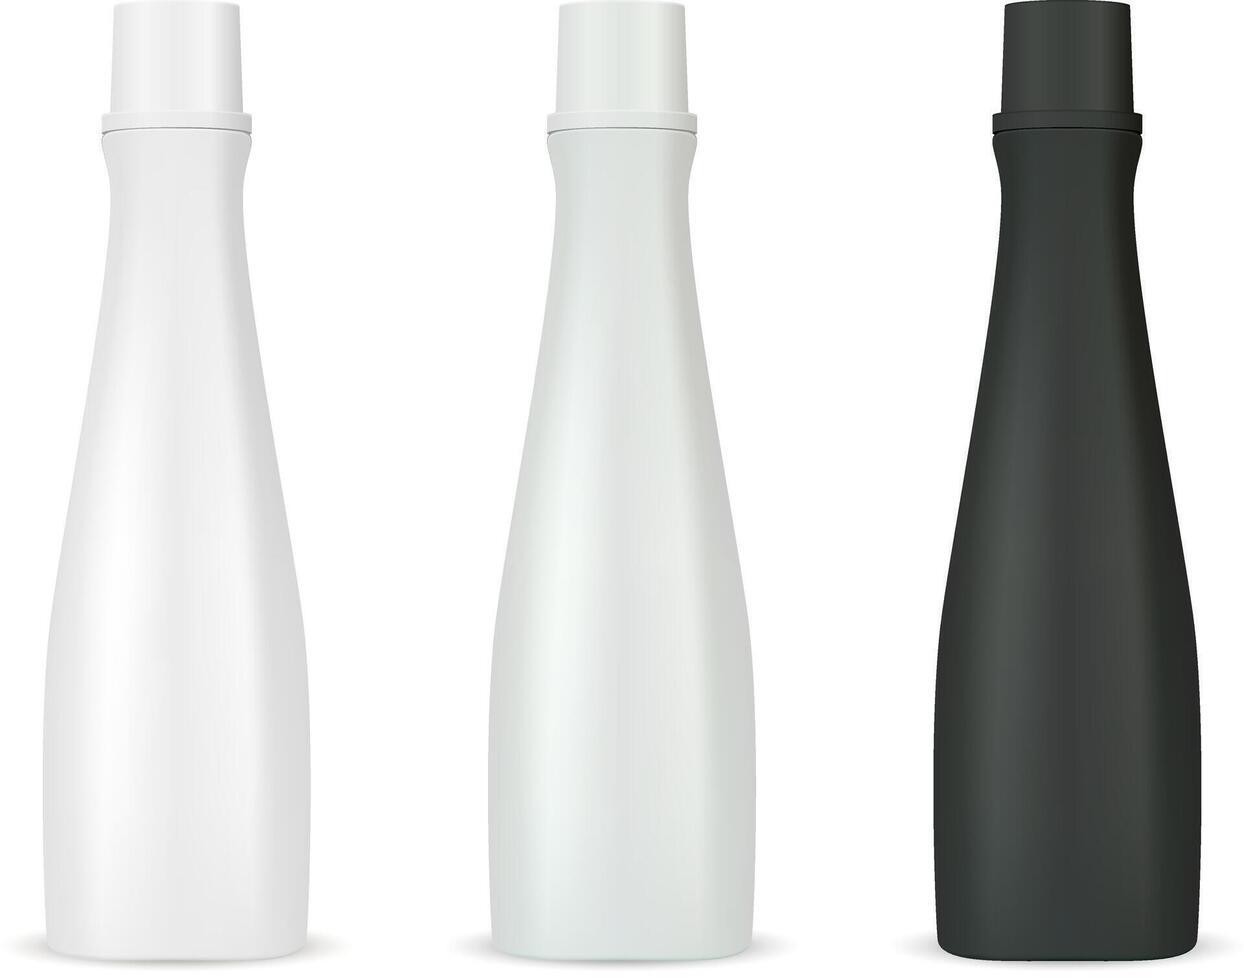 kunstmatig flessen mockup pak voor shampoo of douche gel. realistisch 3d illustratie van schoonheidsmiddelen pakket met deksel. Doorzichtig blanco sjabloon voor uw ontwerp. vector